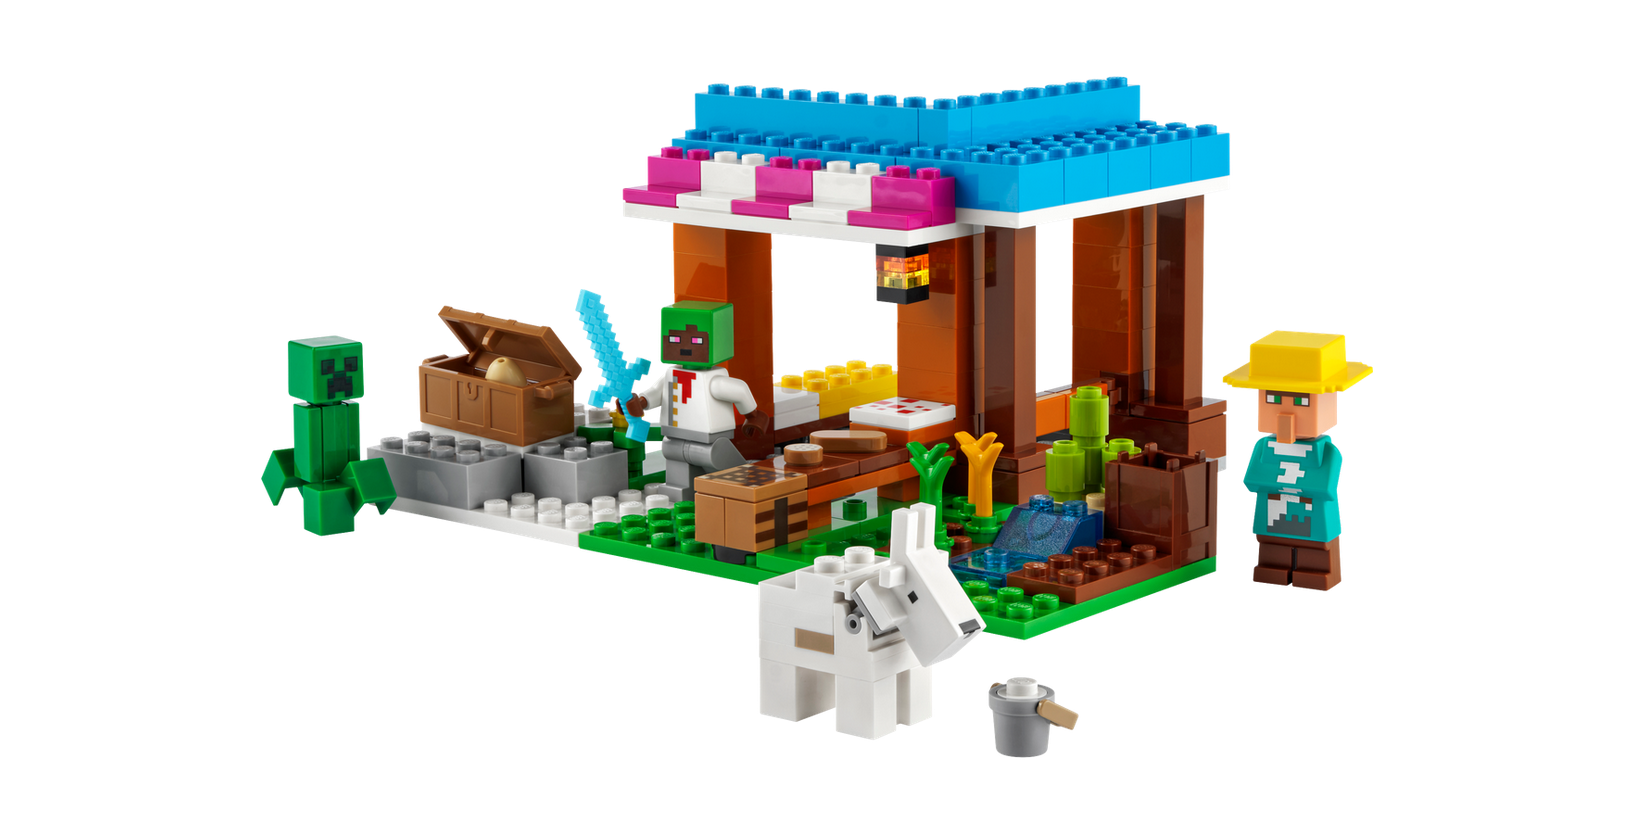 Lego Lego 21184 Minecraft - La boulangerie